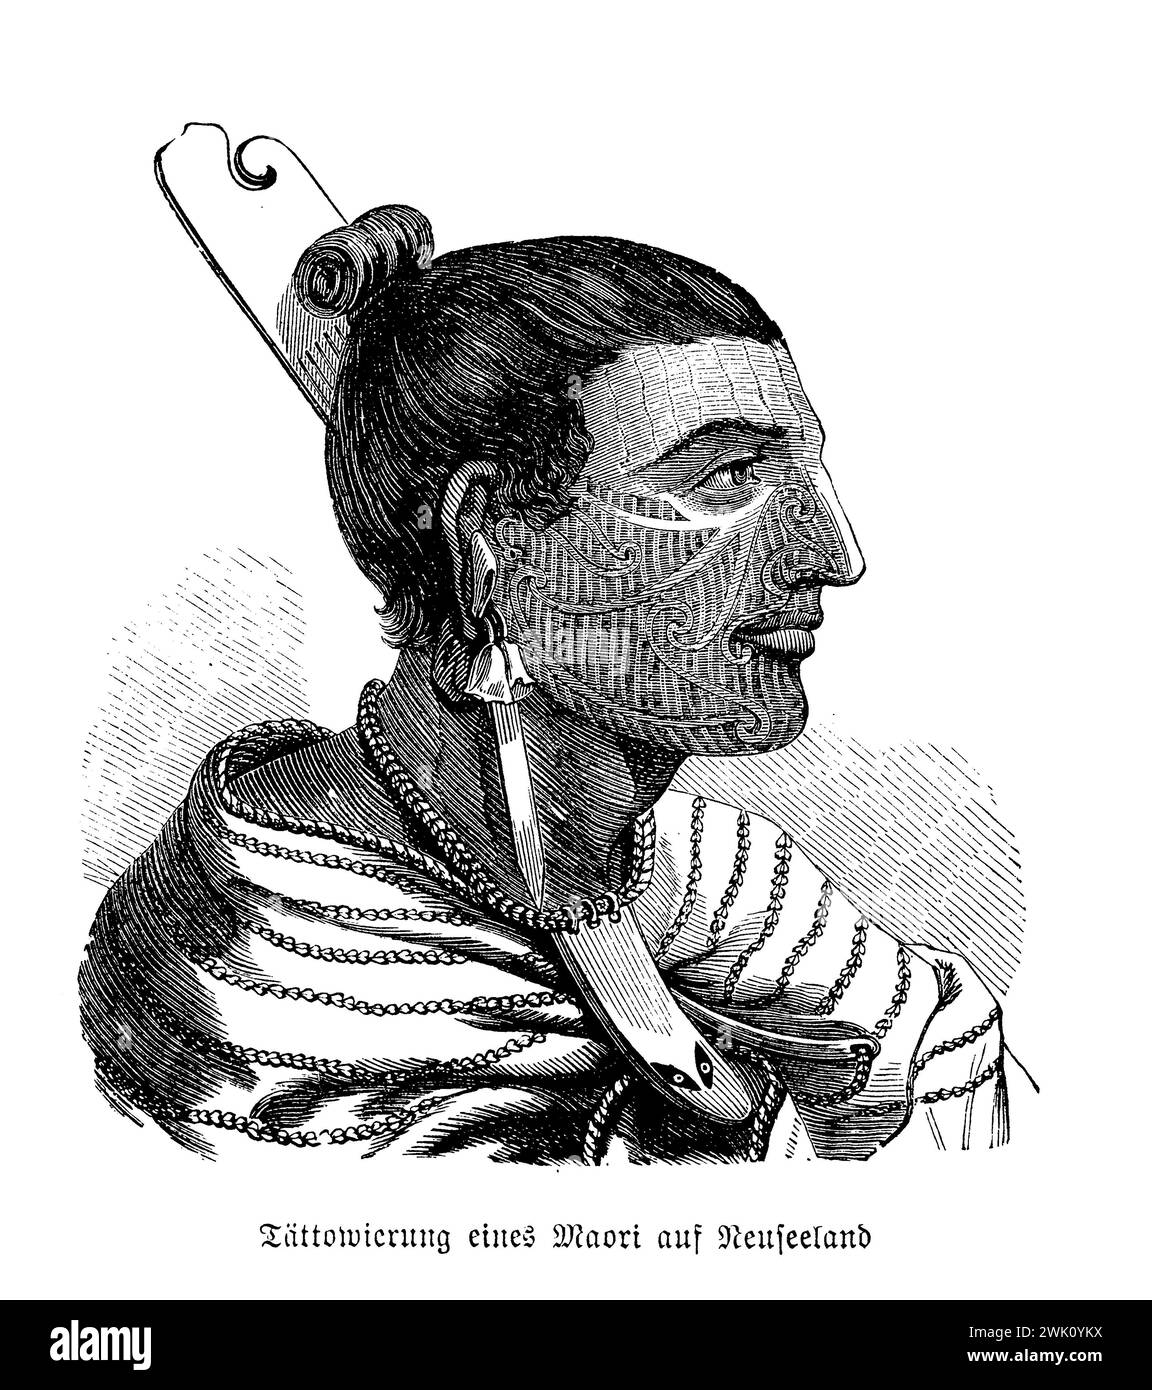 Portrait de Nouvelle-Zélande tatoué maori natif, illustration du XIXe siècle Banque D'Images